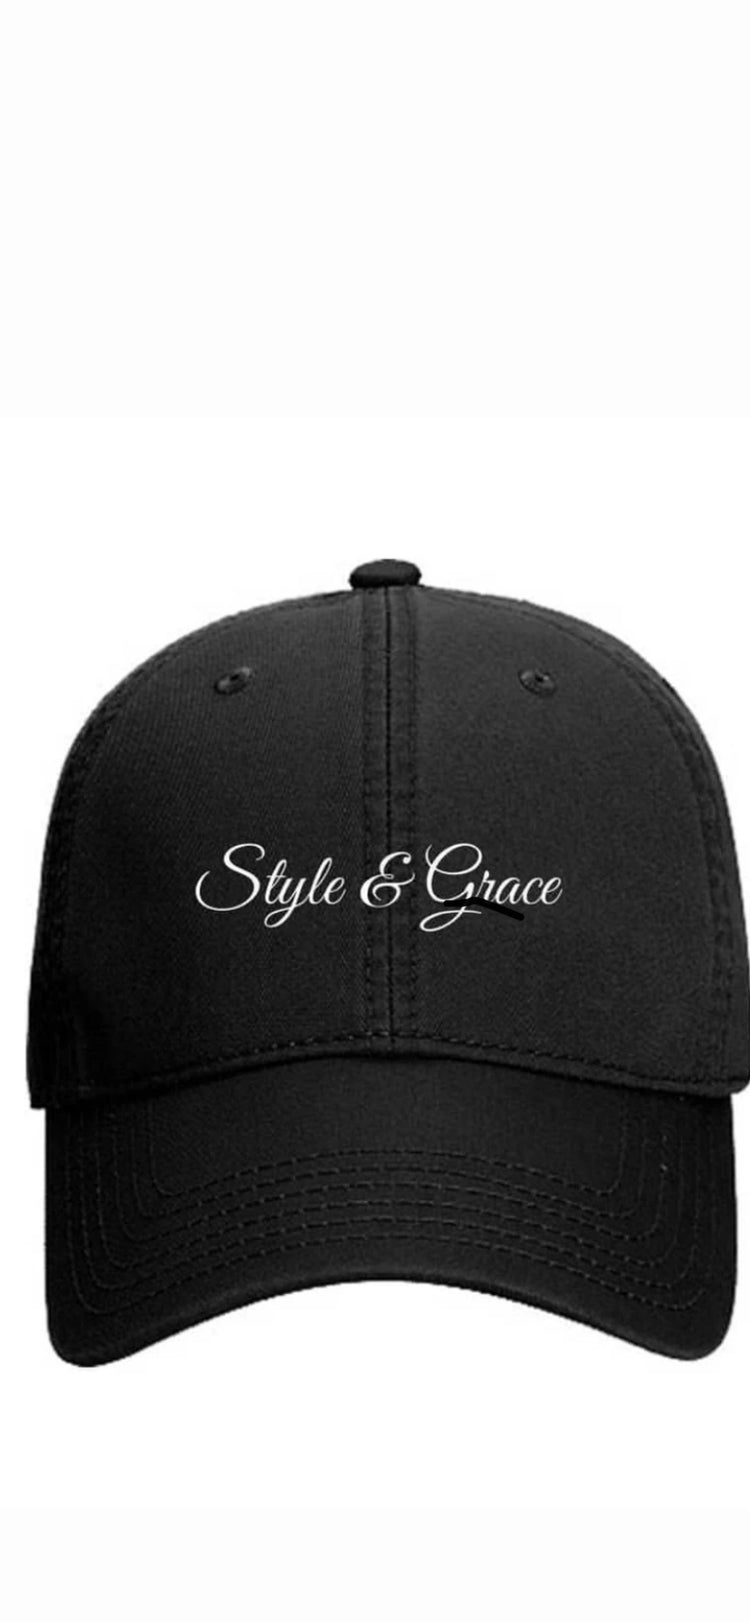 Style & Grace Cap